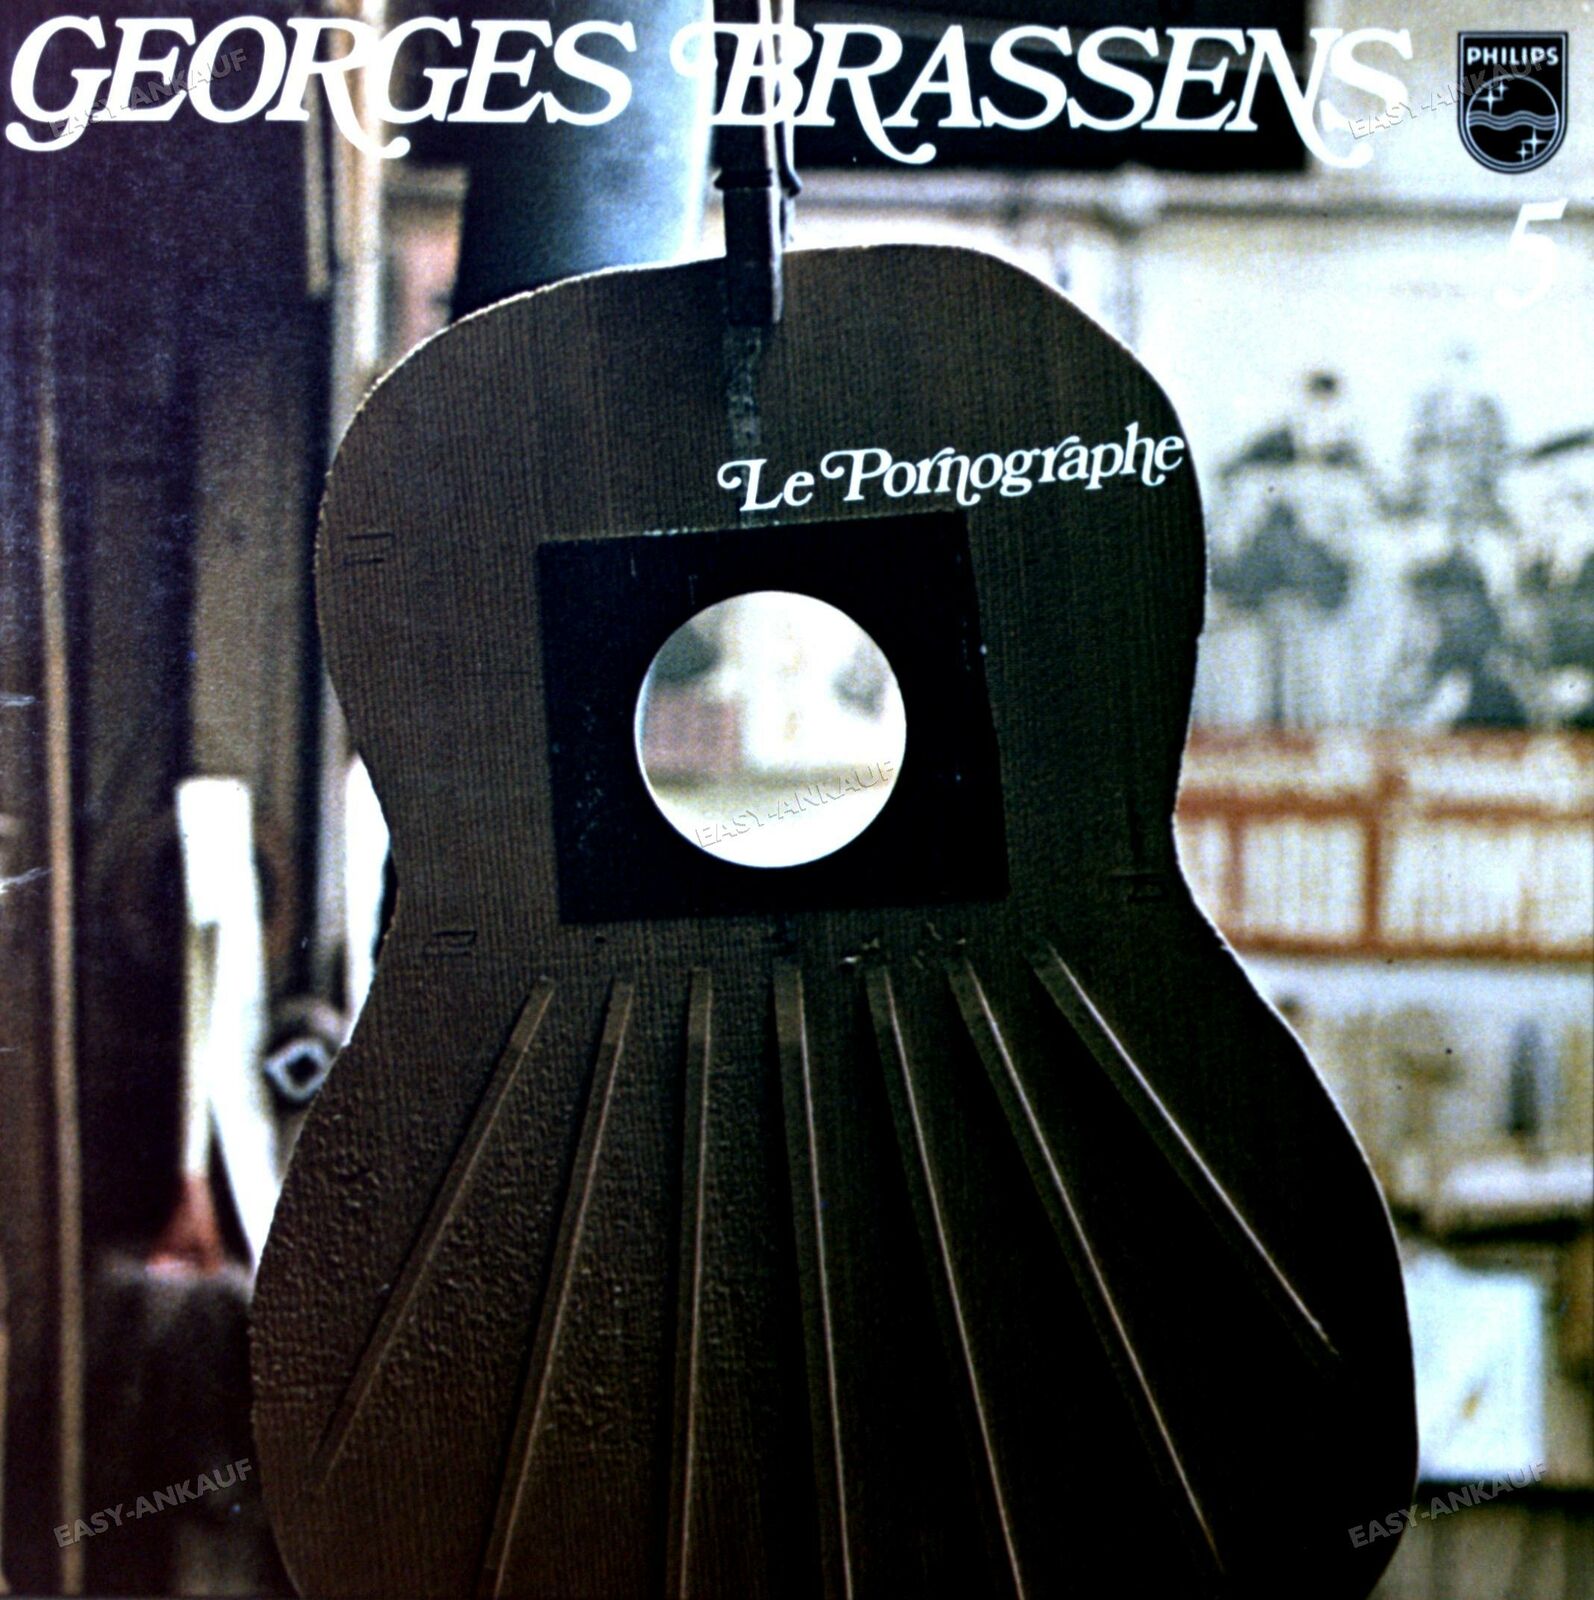 Georges Brassens - 5 - Le Pornographe LP 1965 (VG+/VG+) \'*